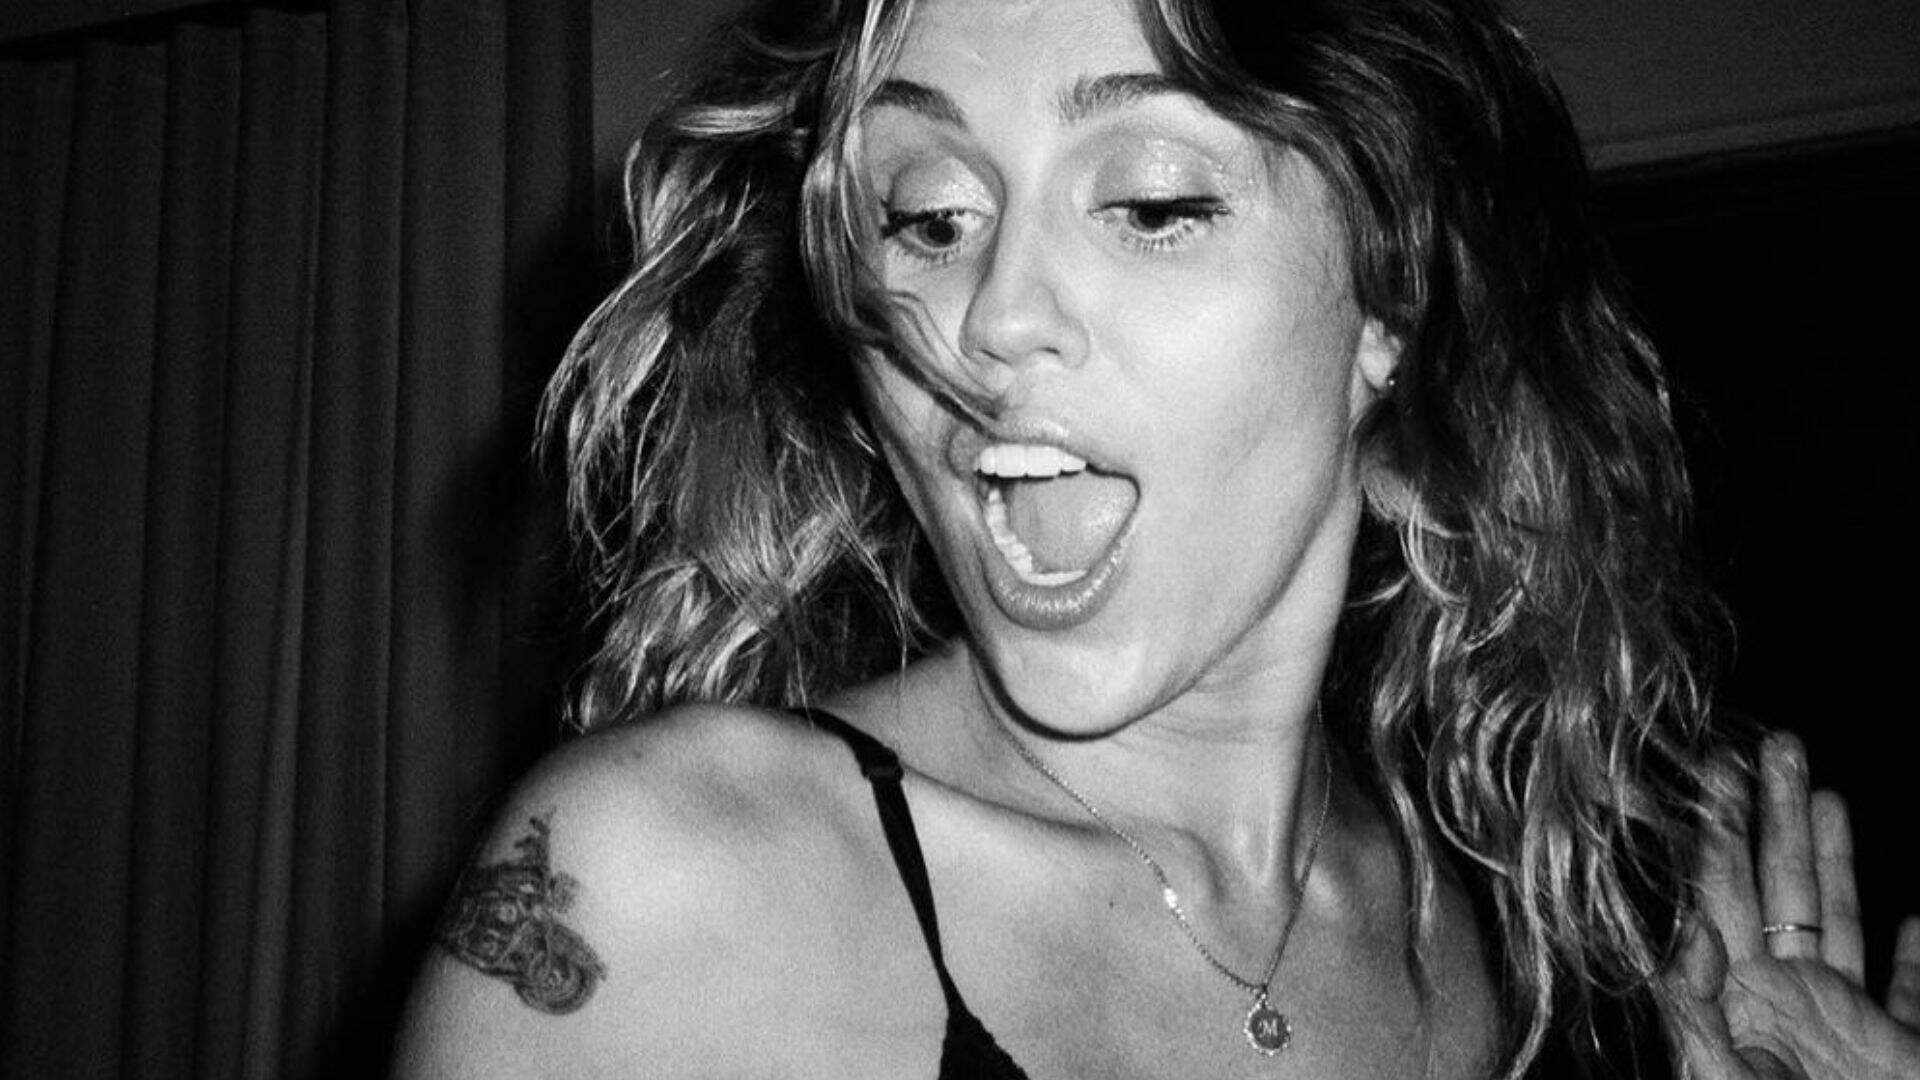 OLHA ELA! De surpresa, Miley Cyrus surge com novo visual e prova que é belíssima com qualquer tom de cabelo - Metropolitana FM